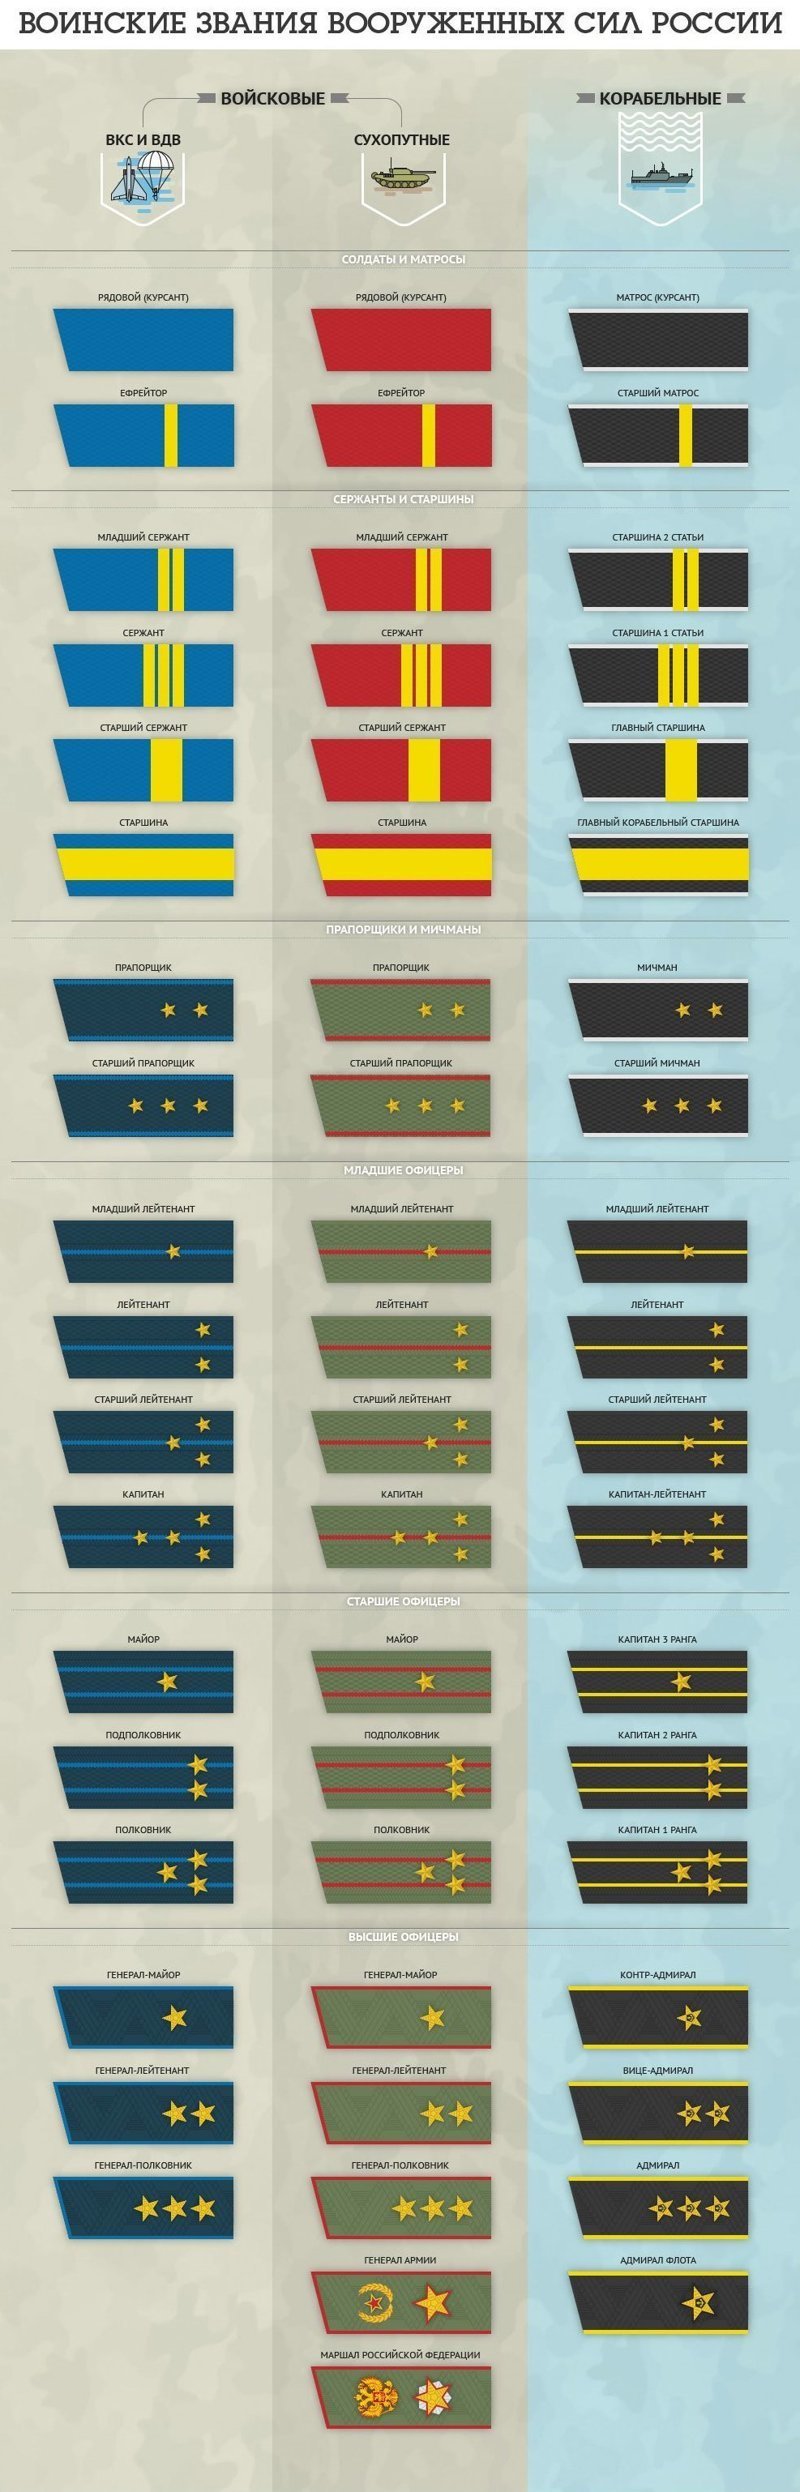 Какие погоны у военных в разных званиях